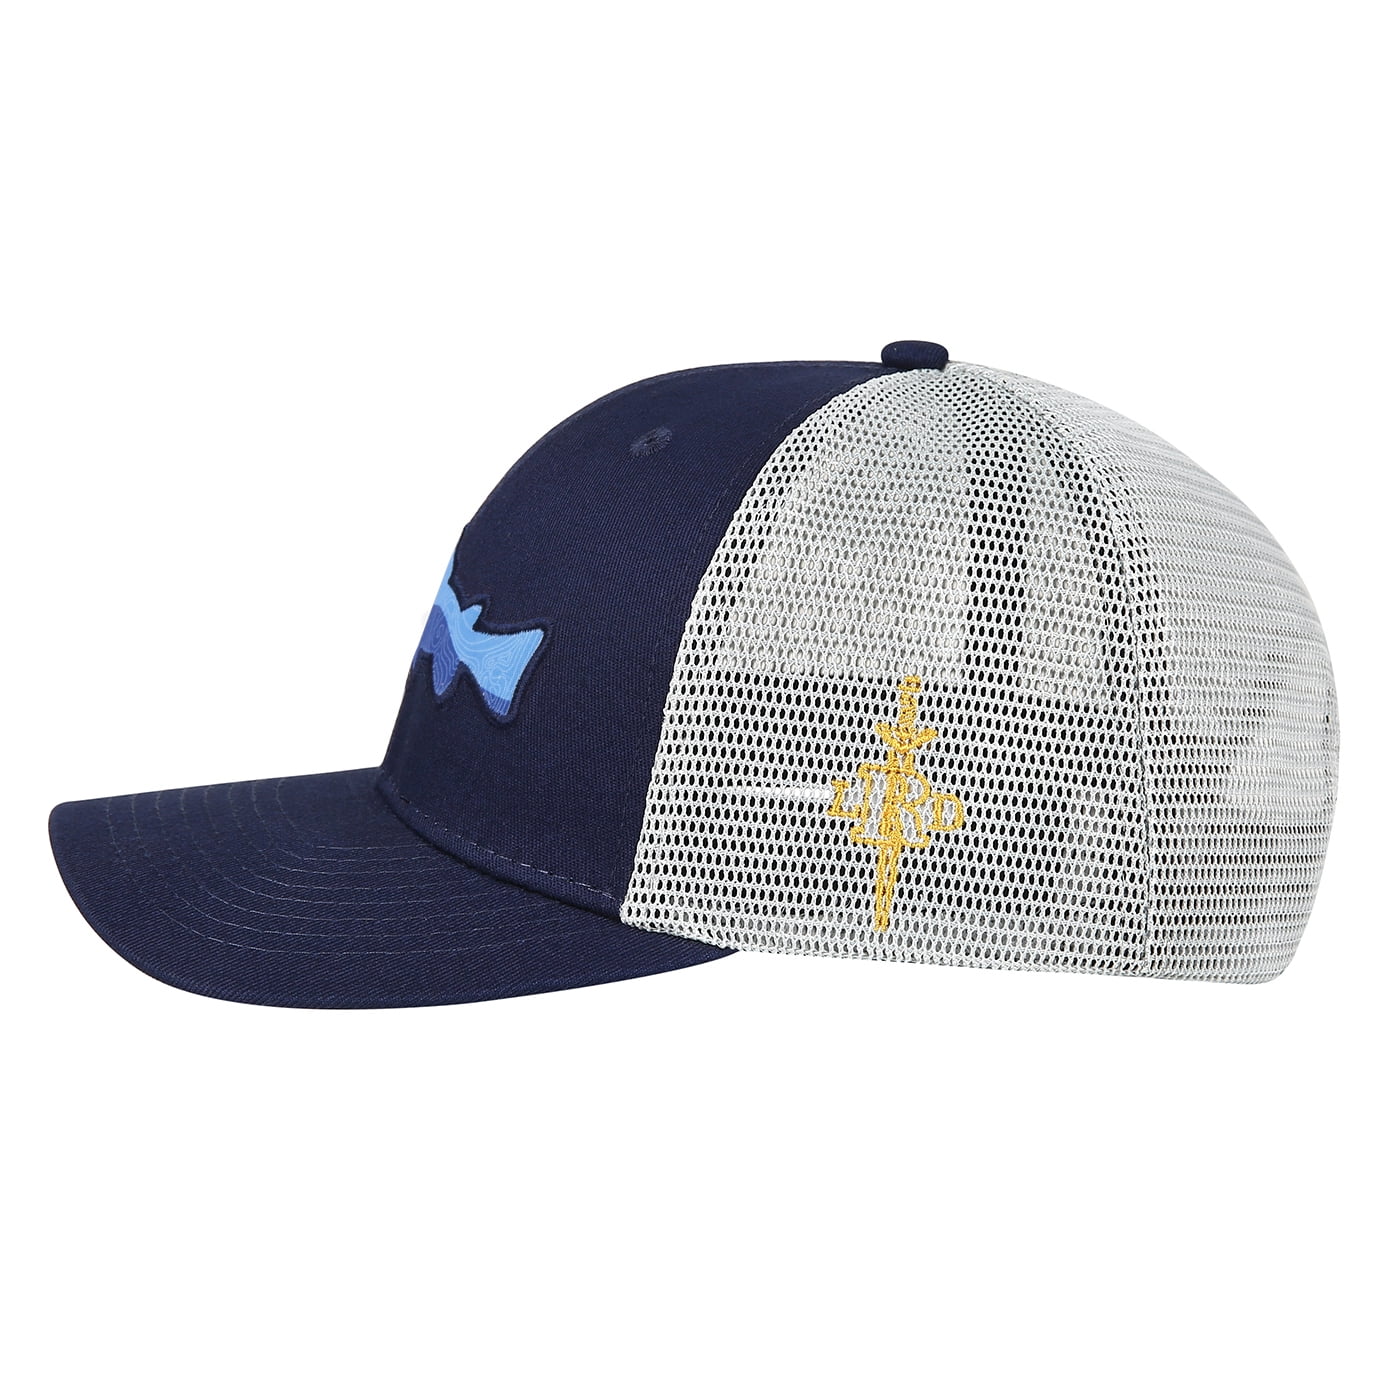 LRD Men Trucker Hat Adjustable Snapback Mesh Baseball Cap 